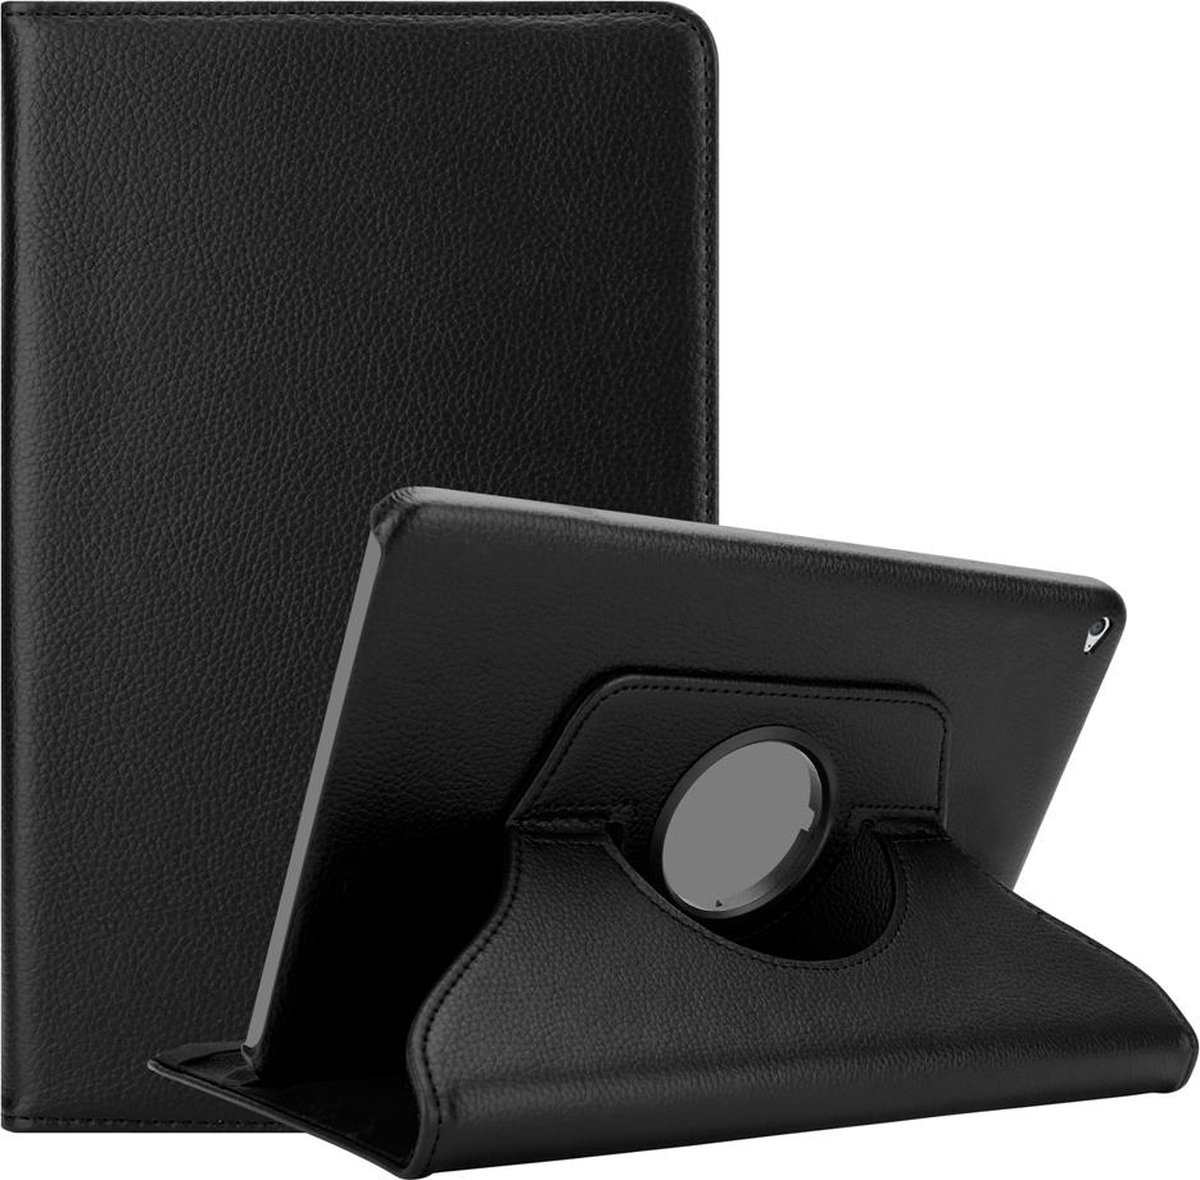 Cadorabo Tablet Hoesje voor Apple iPad AIR 2 2014 / AIR 2013 in OUDERLING ZWART - Beschermhoes met Auto Wake Up, met standfunctie en elastieksluiting Book Case Cover Etui